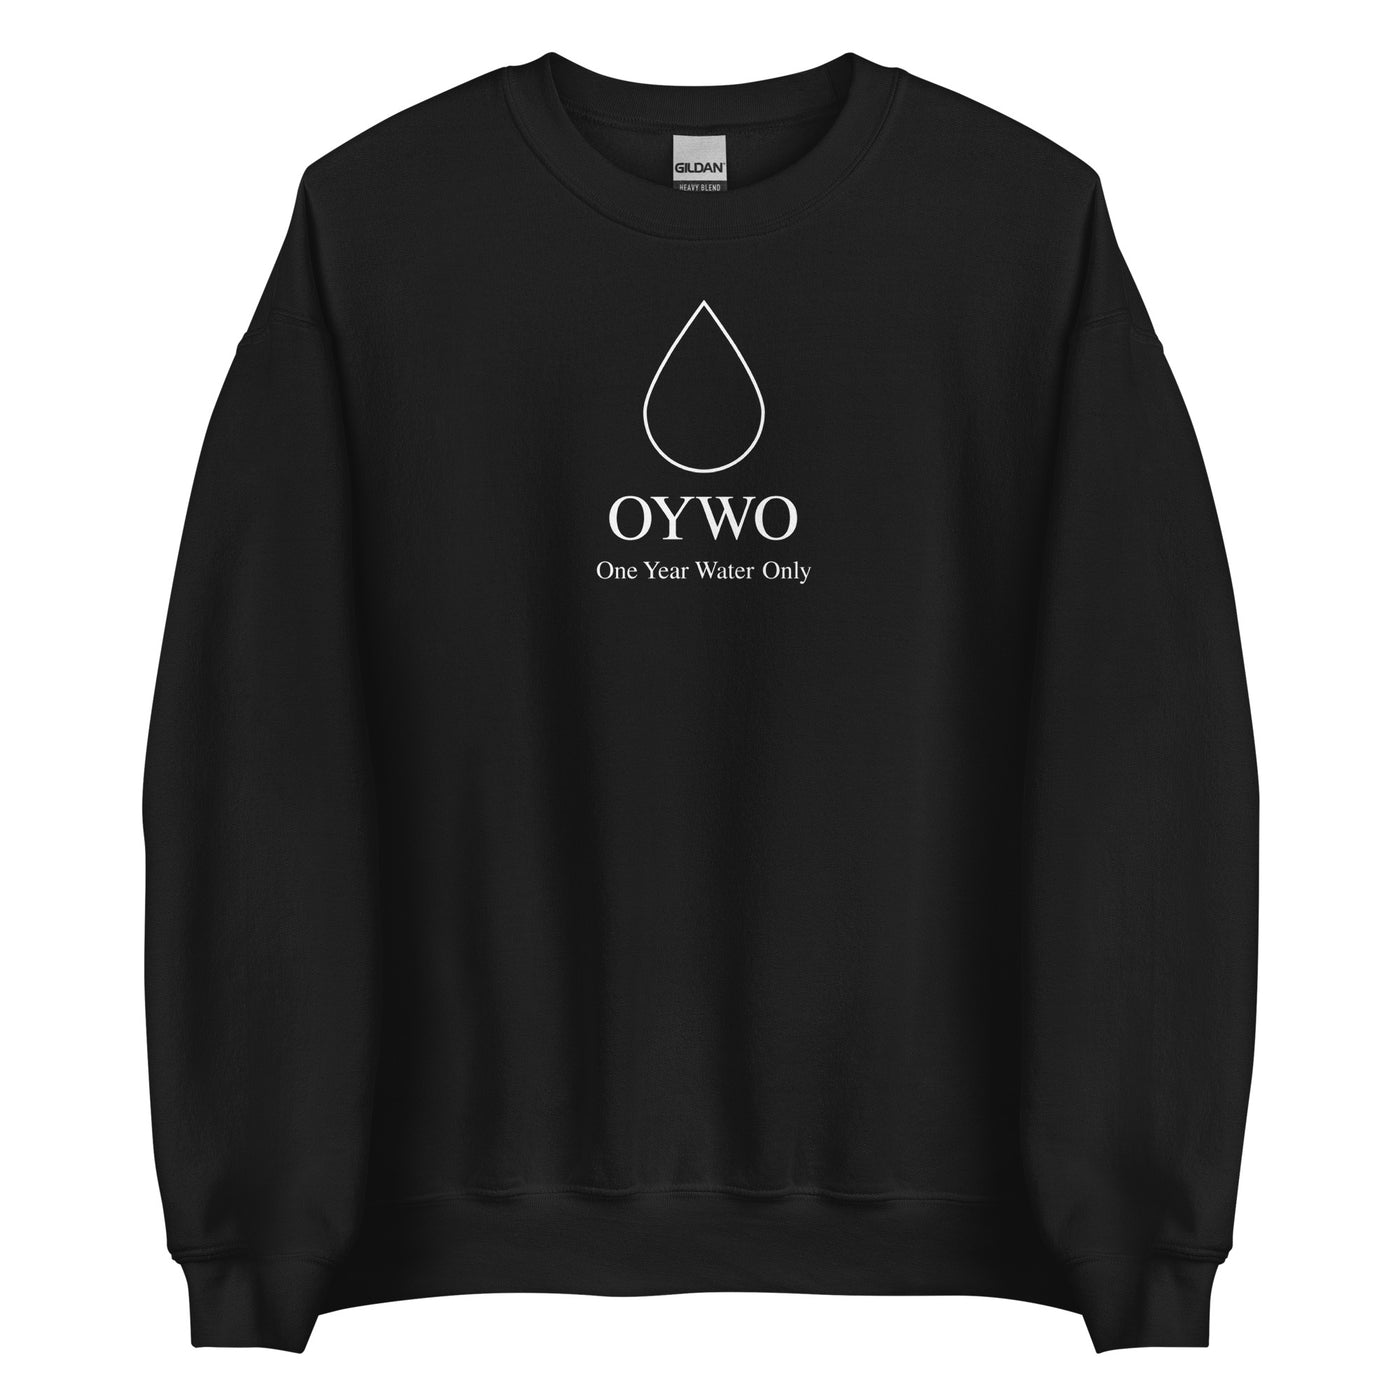 OYWO Black Unisex Sweatshirt